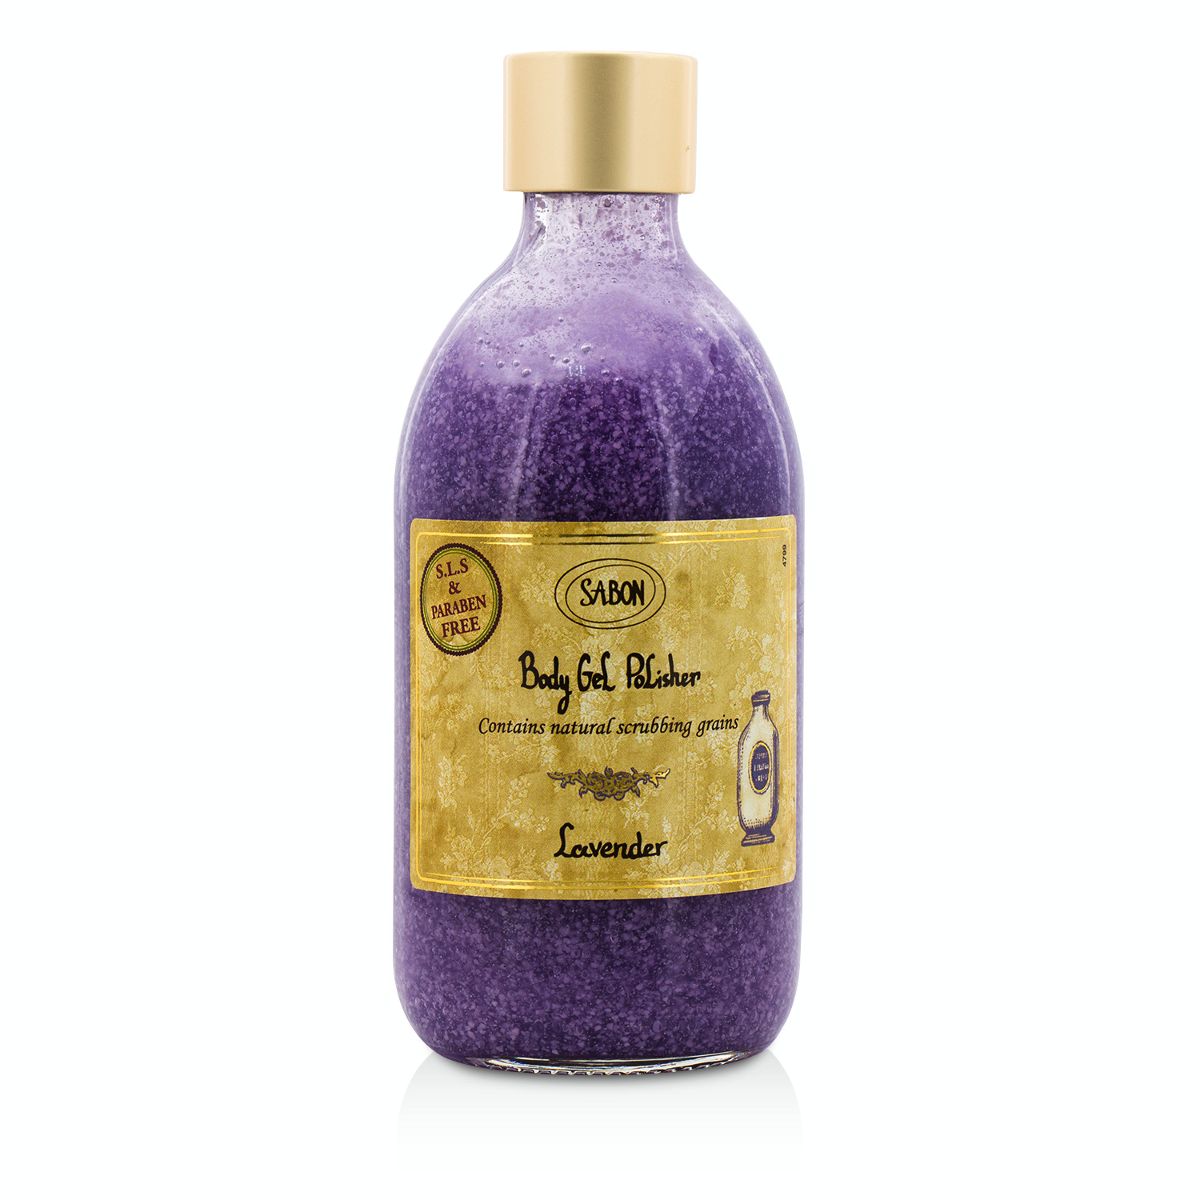 Body Gel Polisher - Lavender Sabon Image